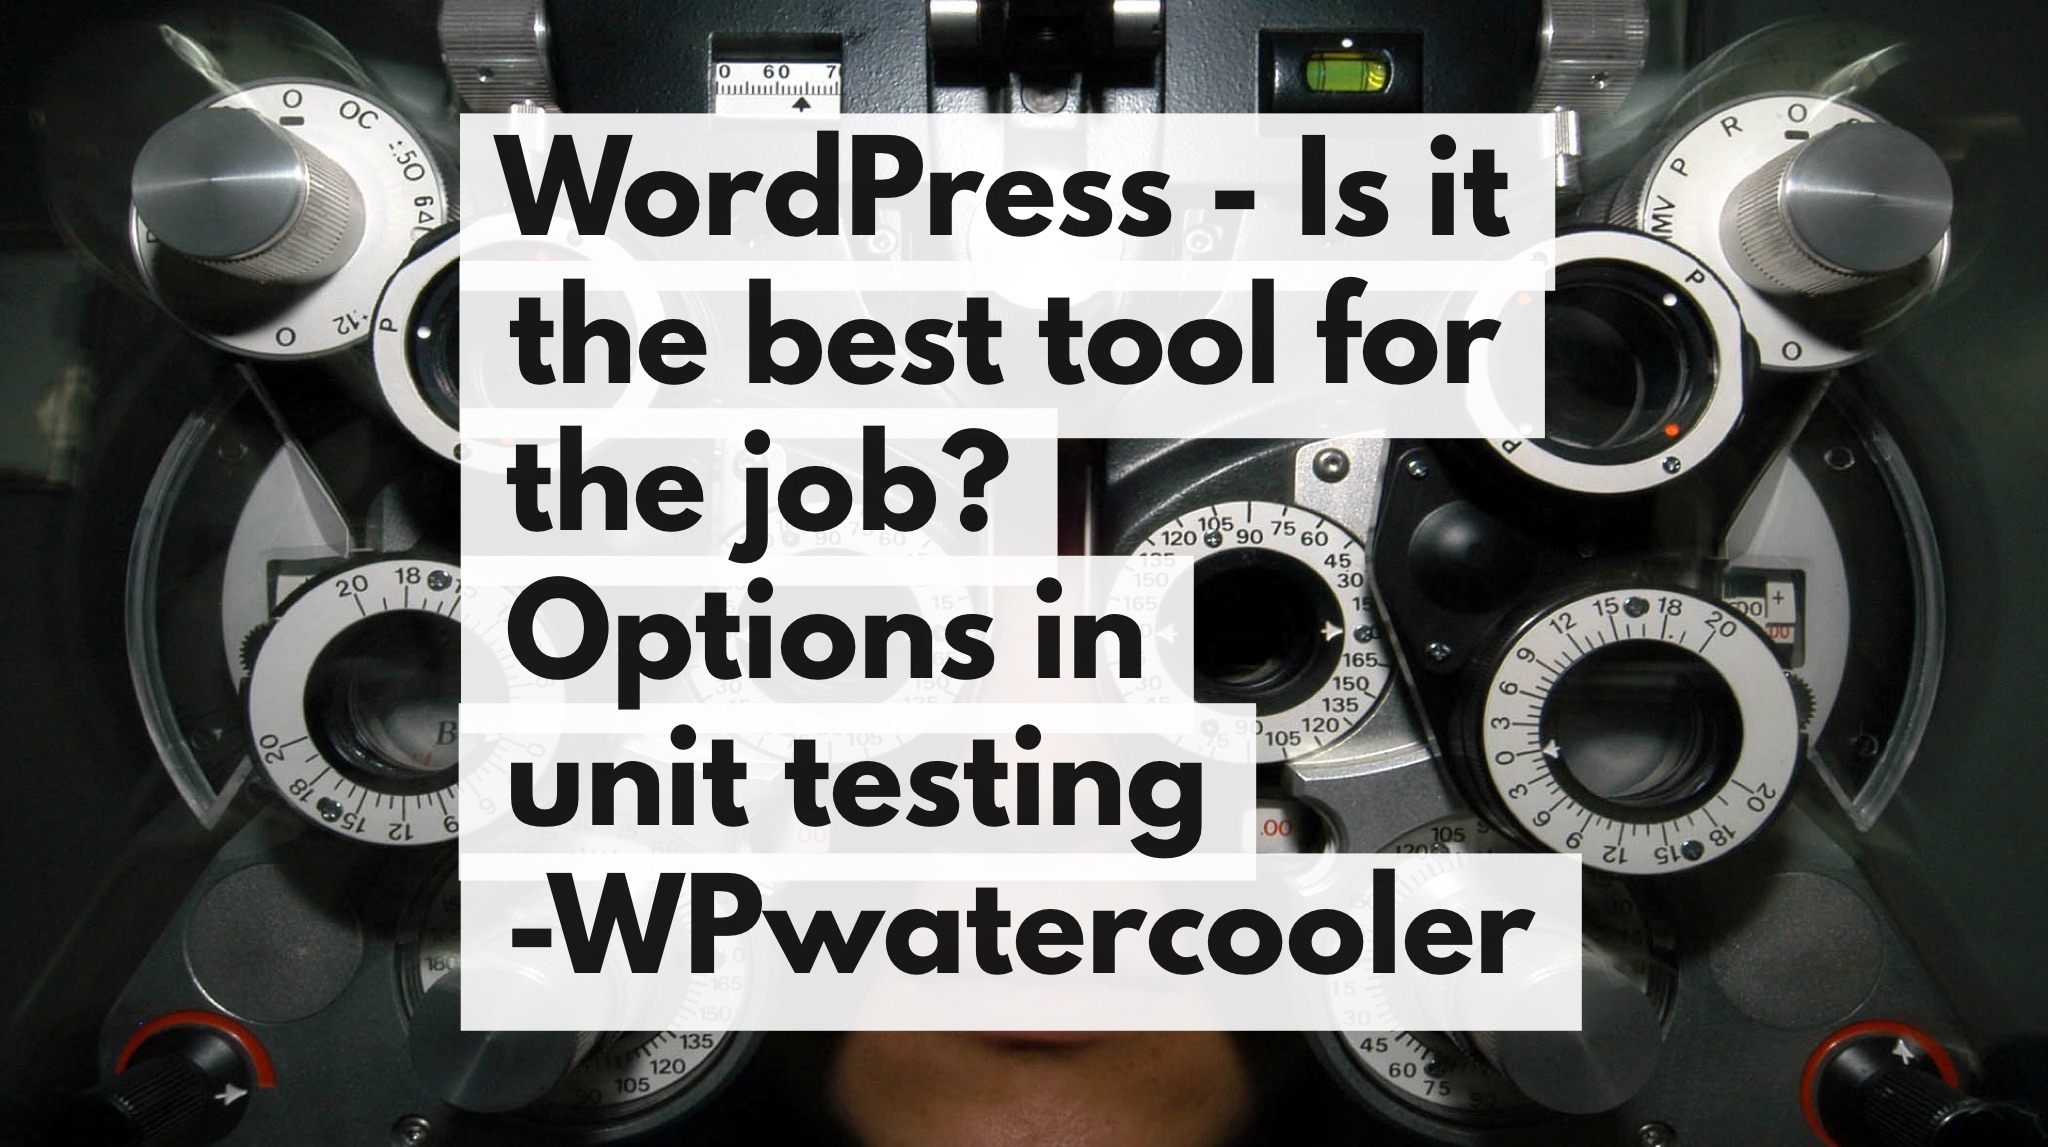 EP264 - WordPress - Is it the best tool for the job? - WPwatercooler